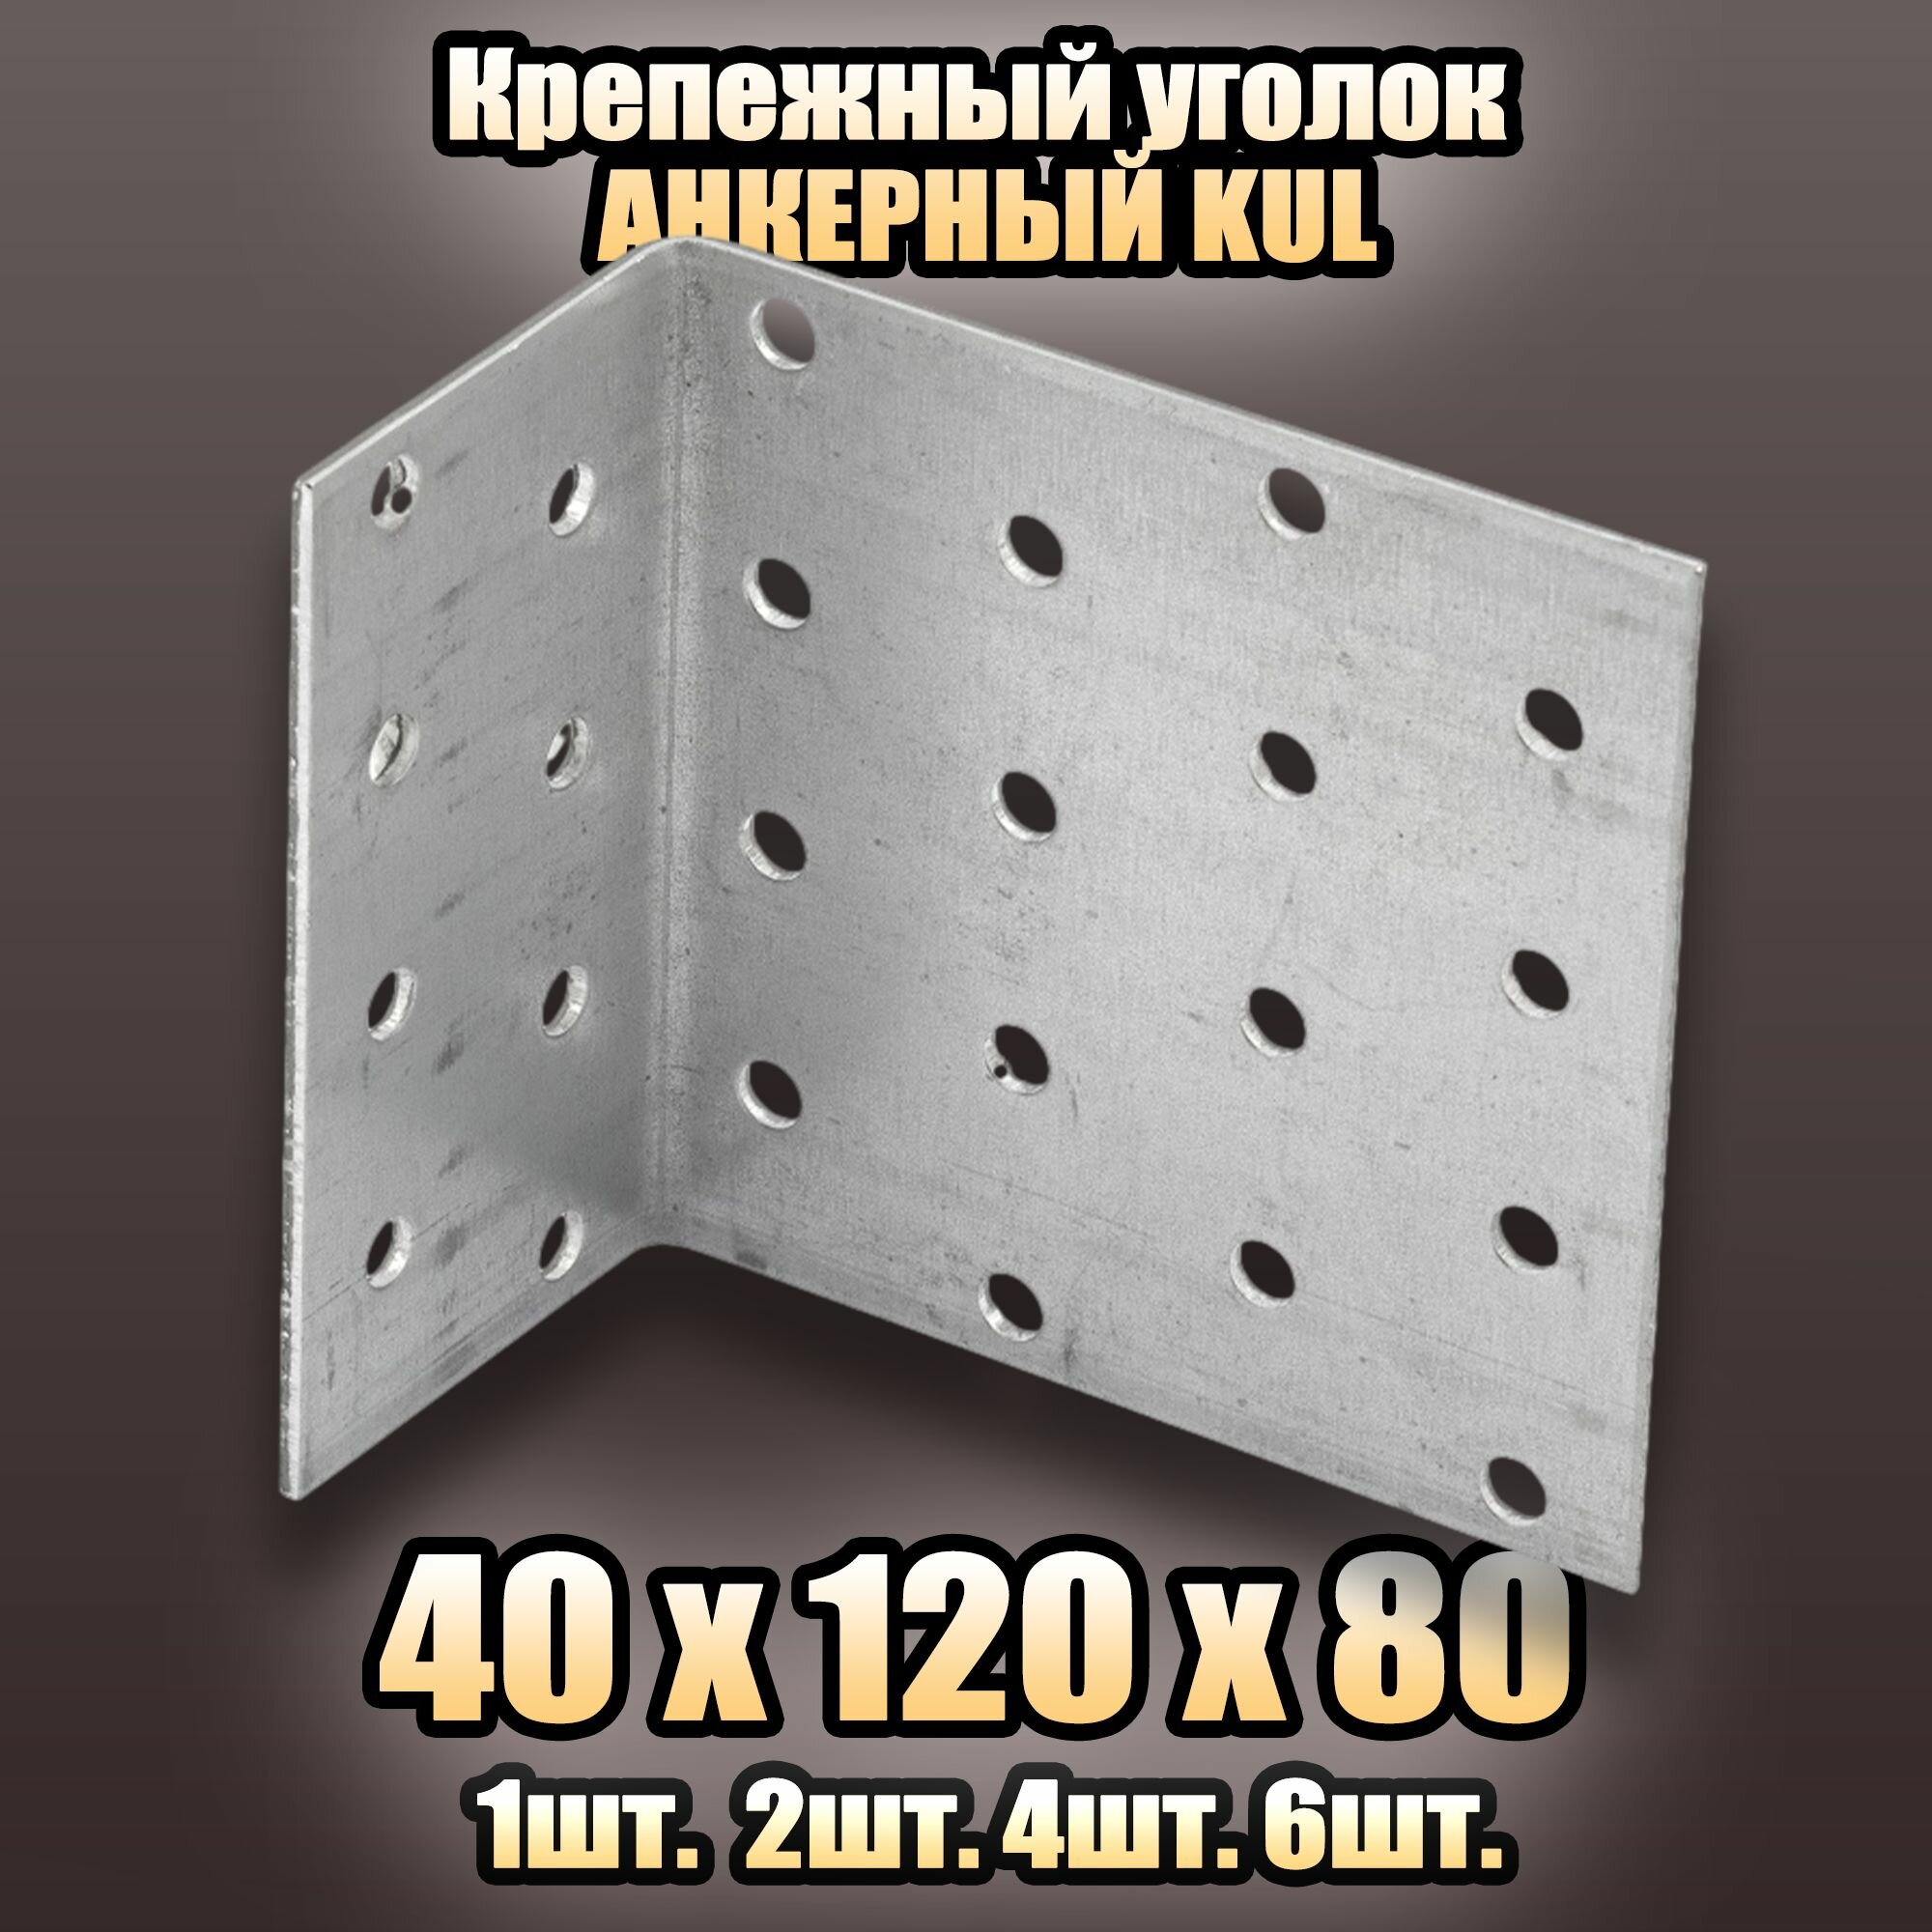 Крепежный анкерный уголок KUL 40х120х80 - 4 шт